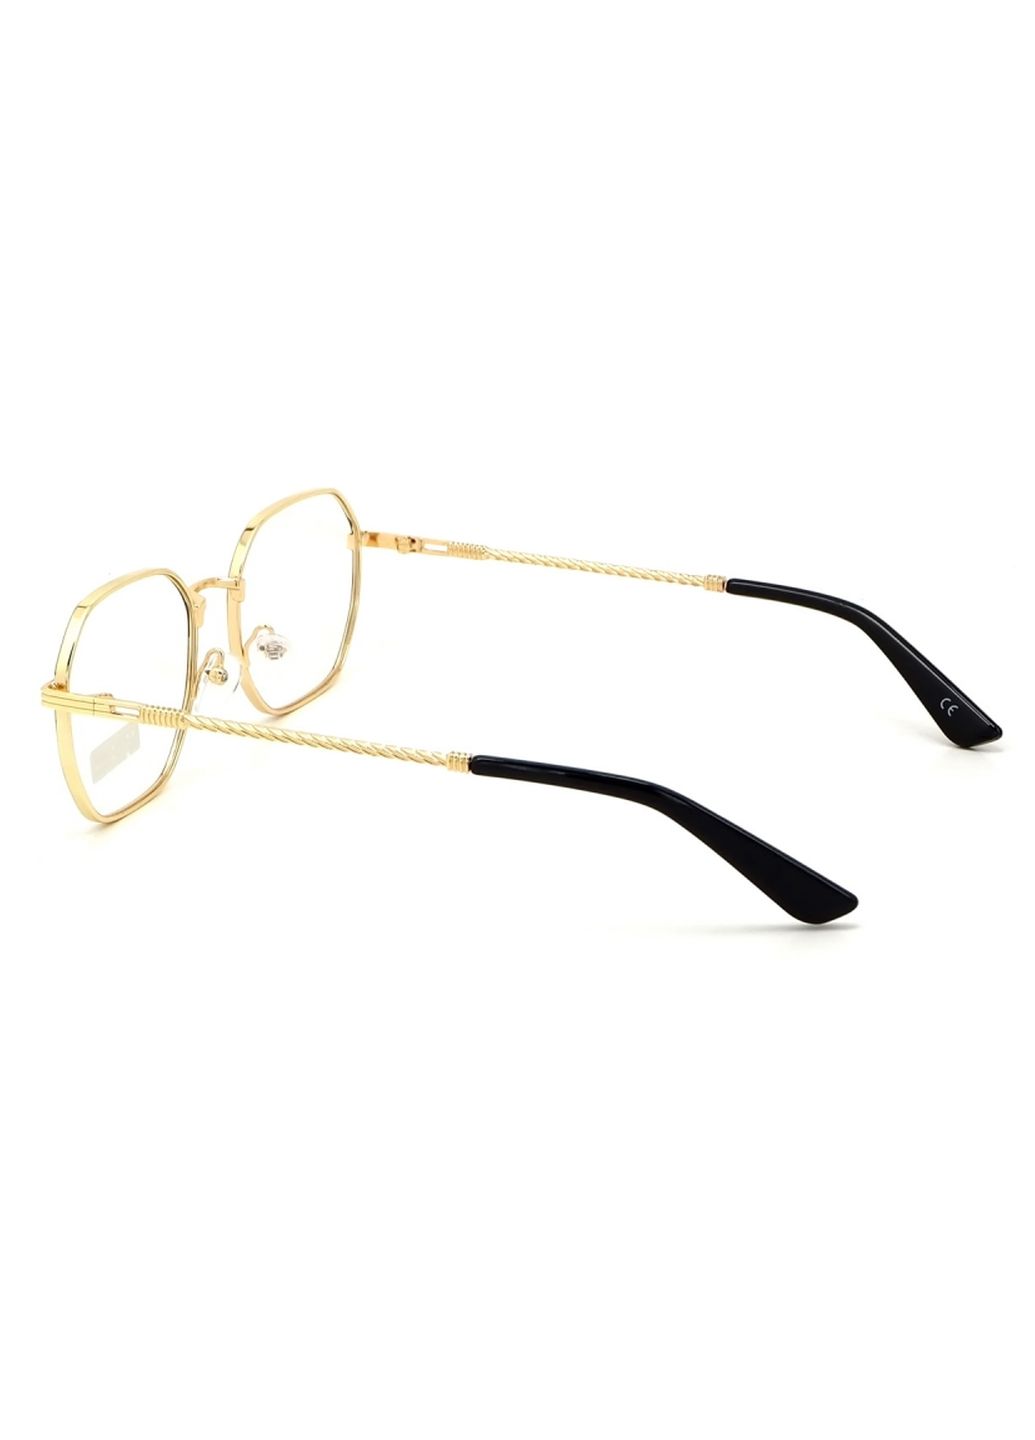 Купить Очки для работы за компьютером Cooper Glasses в золотой оправе 124011 в интернет-магазине